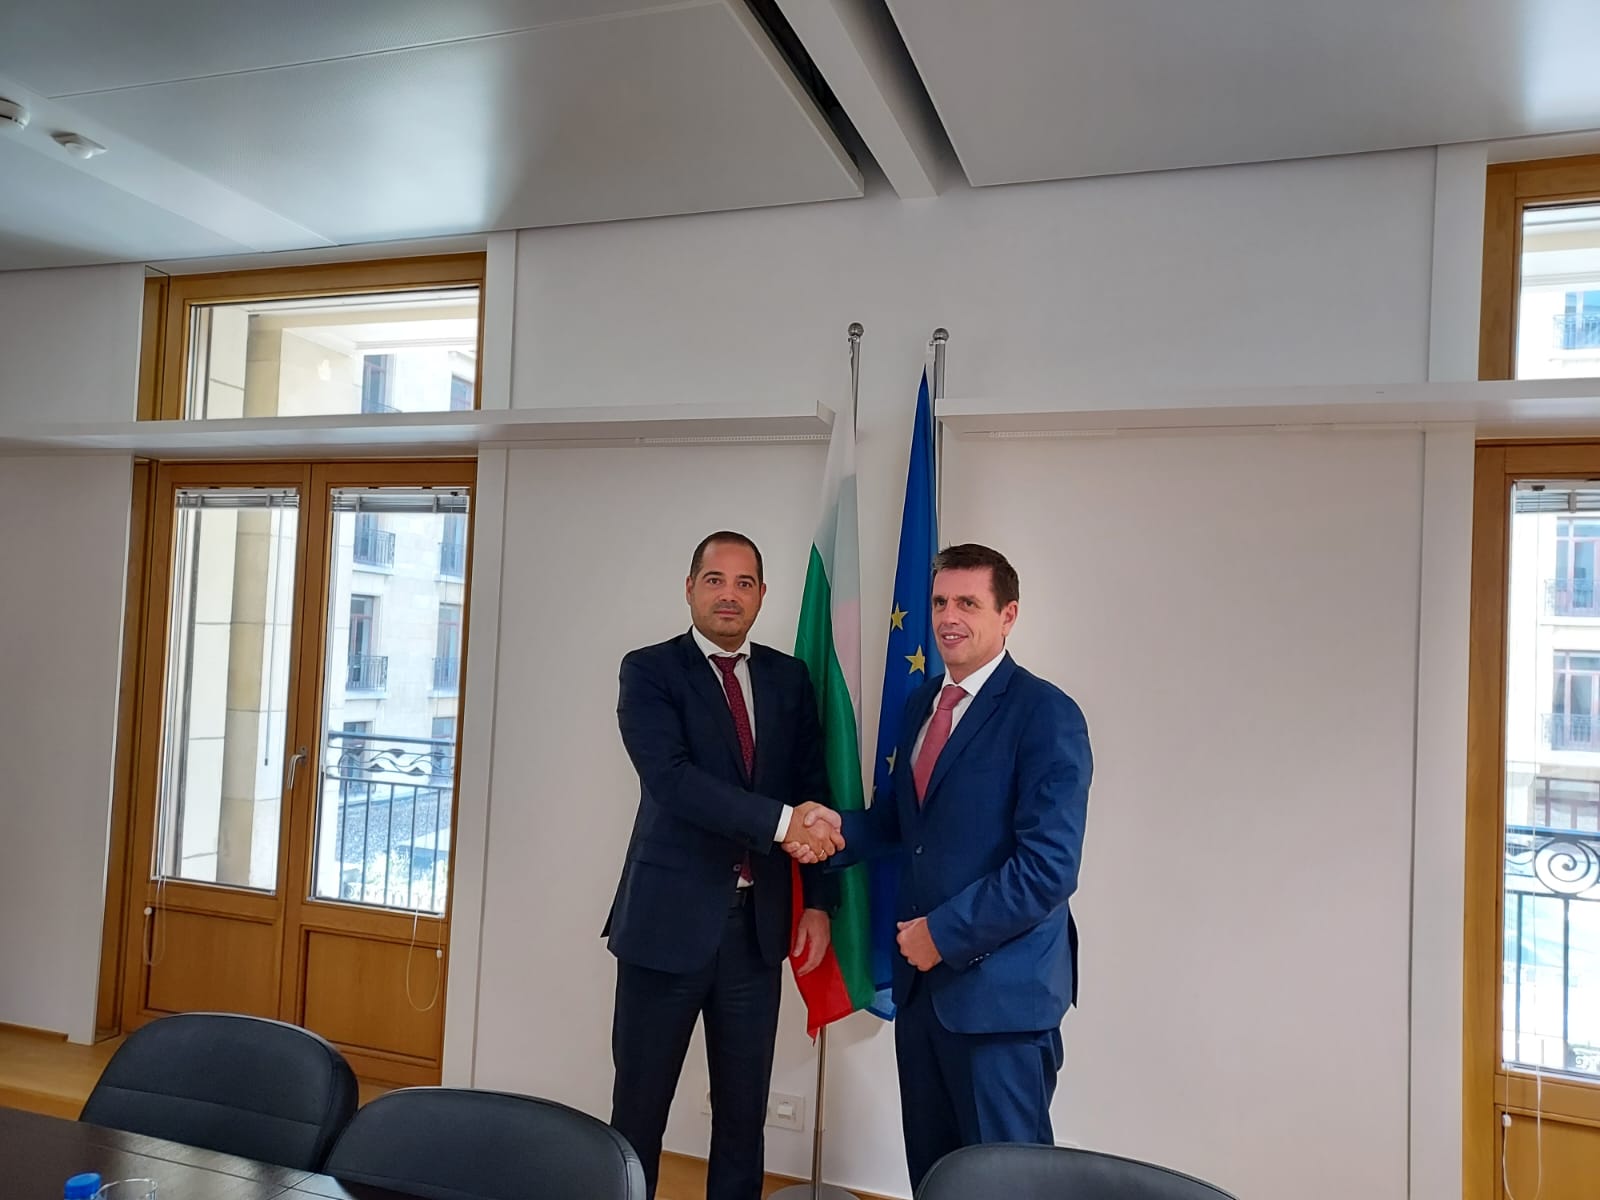 Министър Калин Стоянов проведе среща с Димитрис Кeридис, министър по